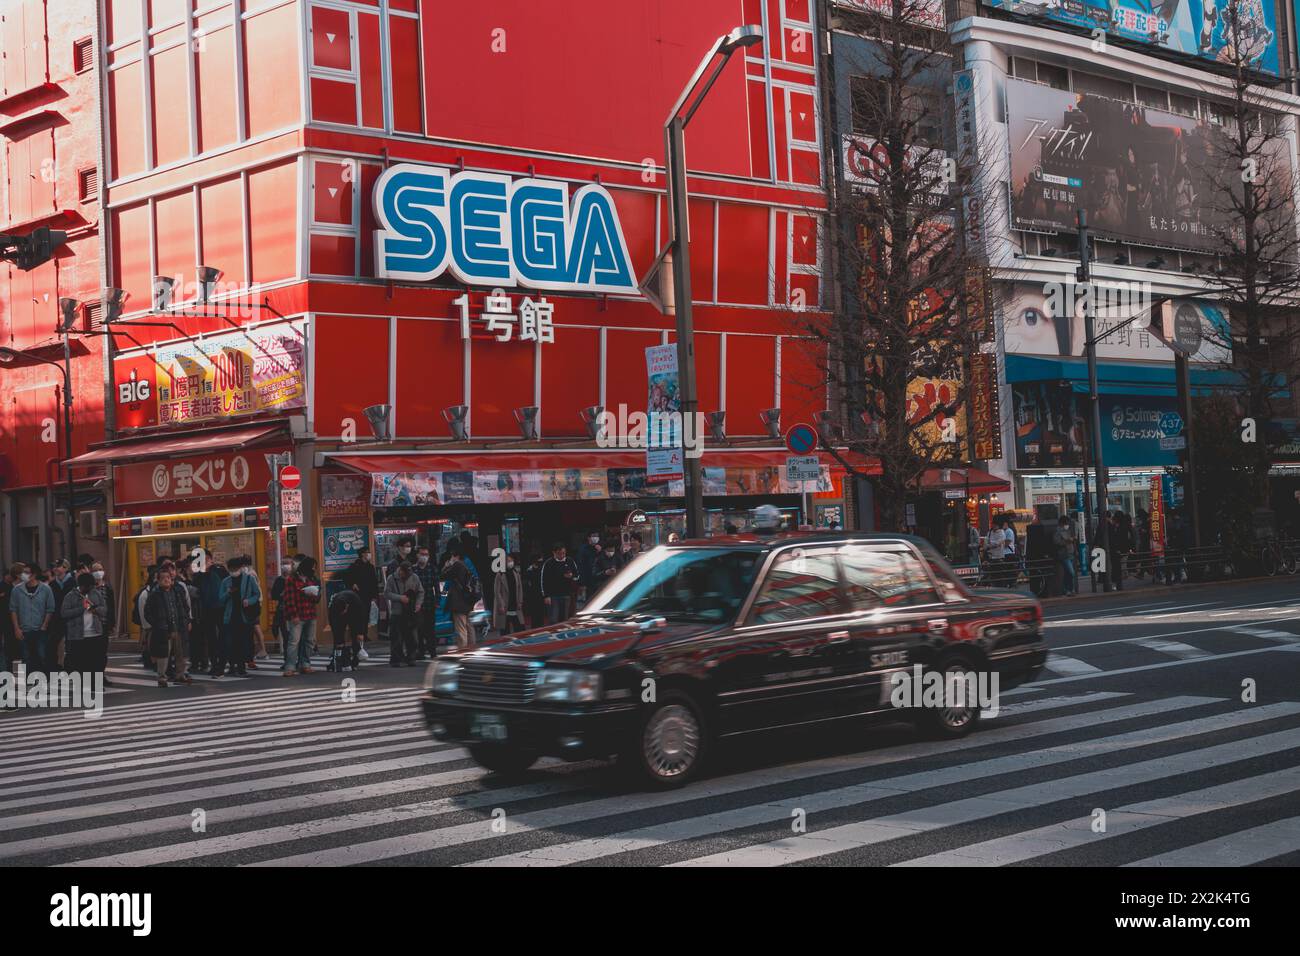 Pulsierende Straßenszene in einer belebten Stadt mit einem prominenten Sega-Gebäude, Fußgängern und einem klassischen schwarzen Taxi, das eine geschäftige Kreuzung überquert. Stockfoto